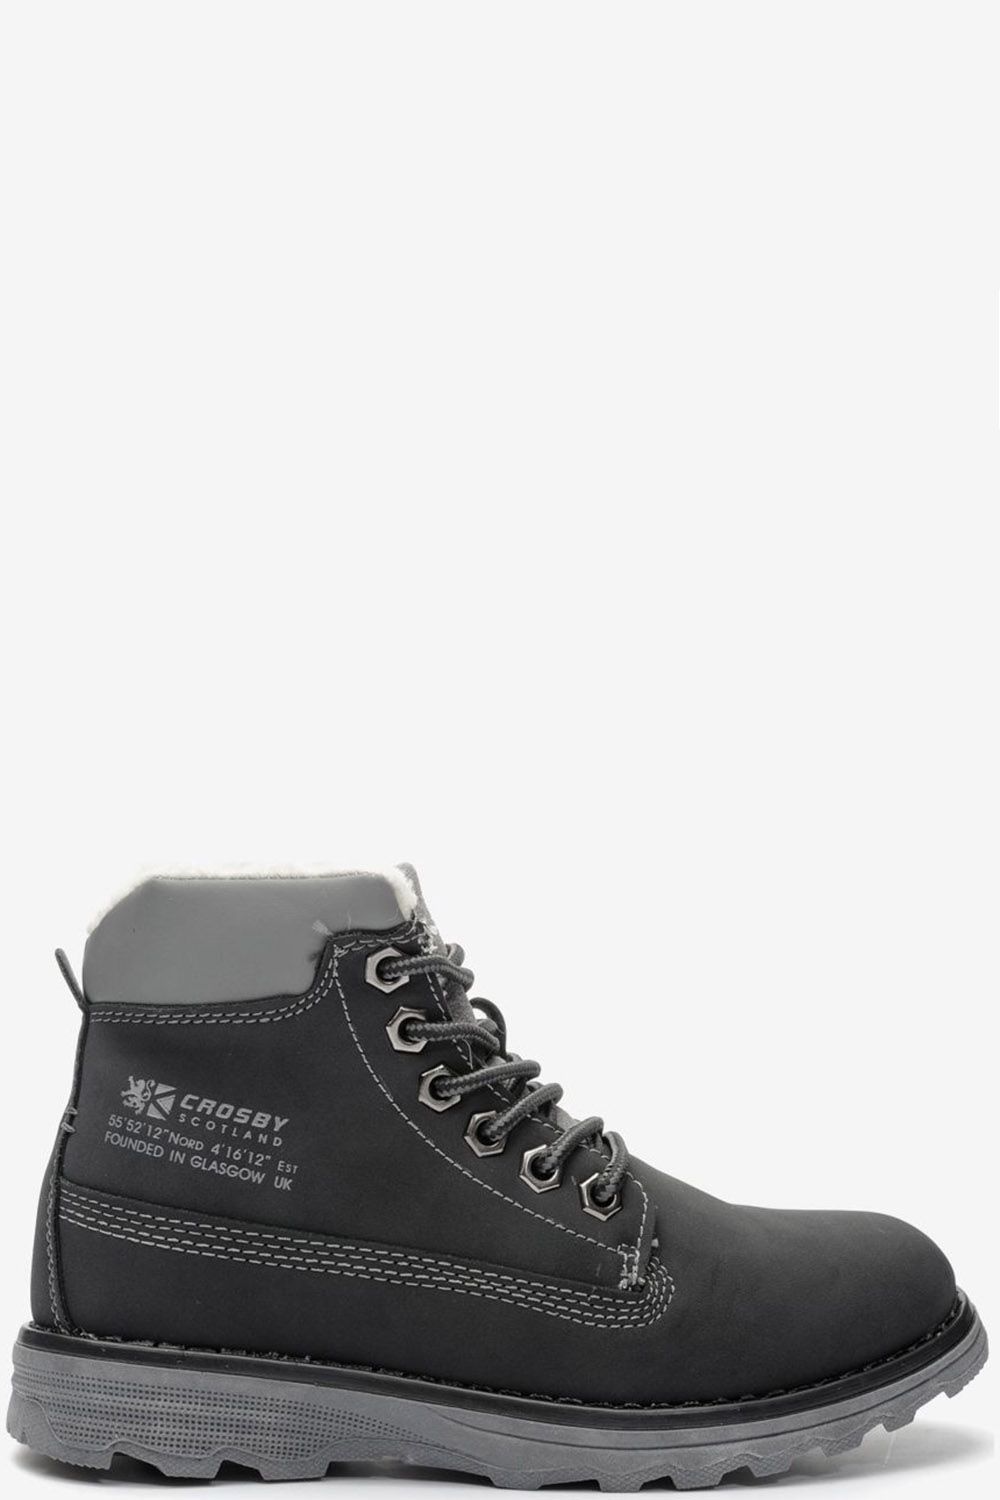 Ботинки Crosby, размер 31, цвет черный 288350/01-01 - фото 2